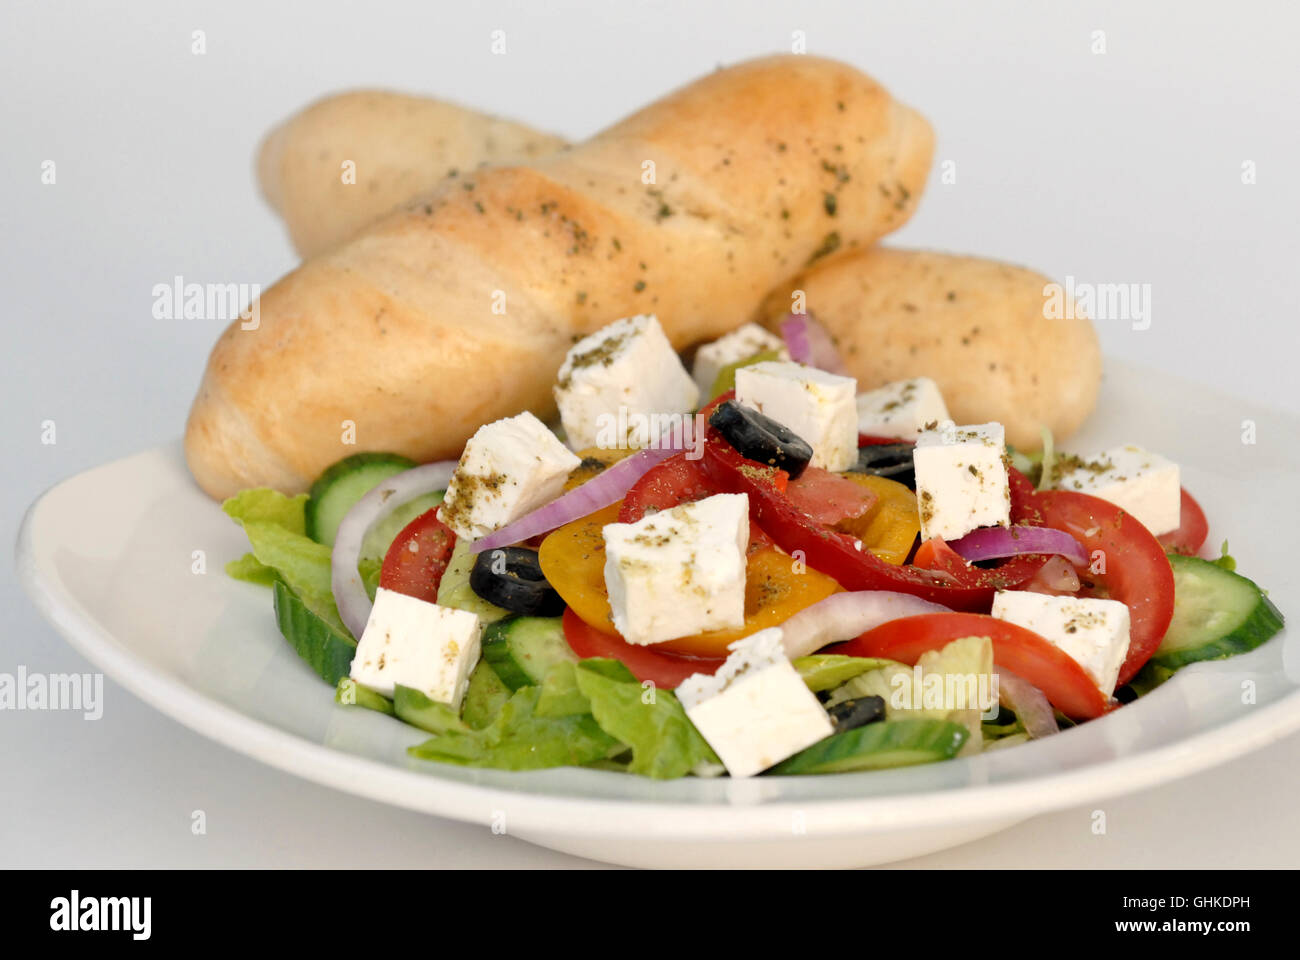 Salade grecque avec fromage Feta contenant des tomates, concombres, laitues, poivrons et olives noires assaisonnée de zaatar et servi w Banque D'Images